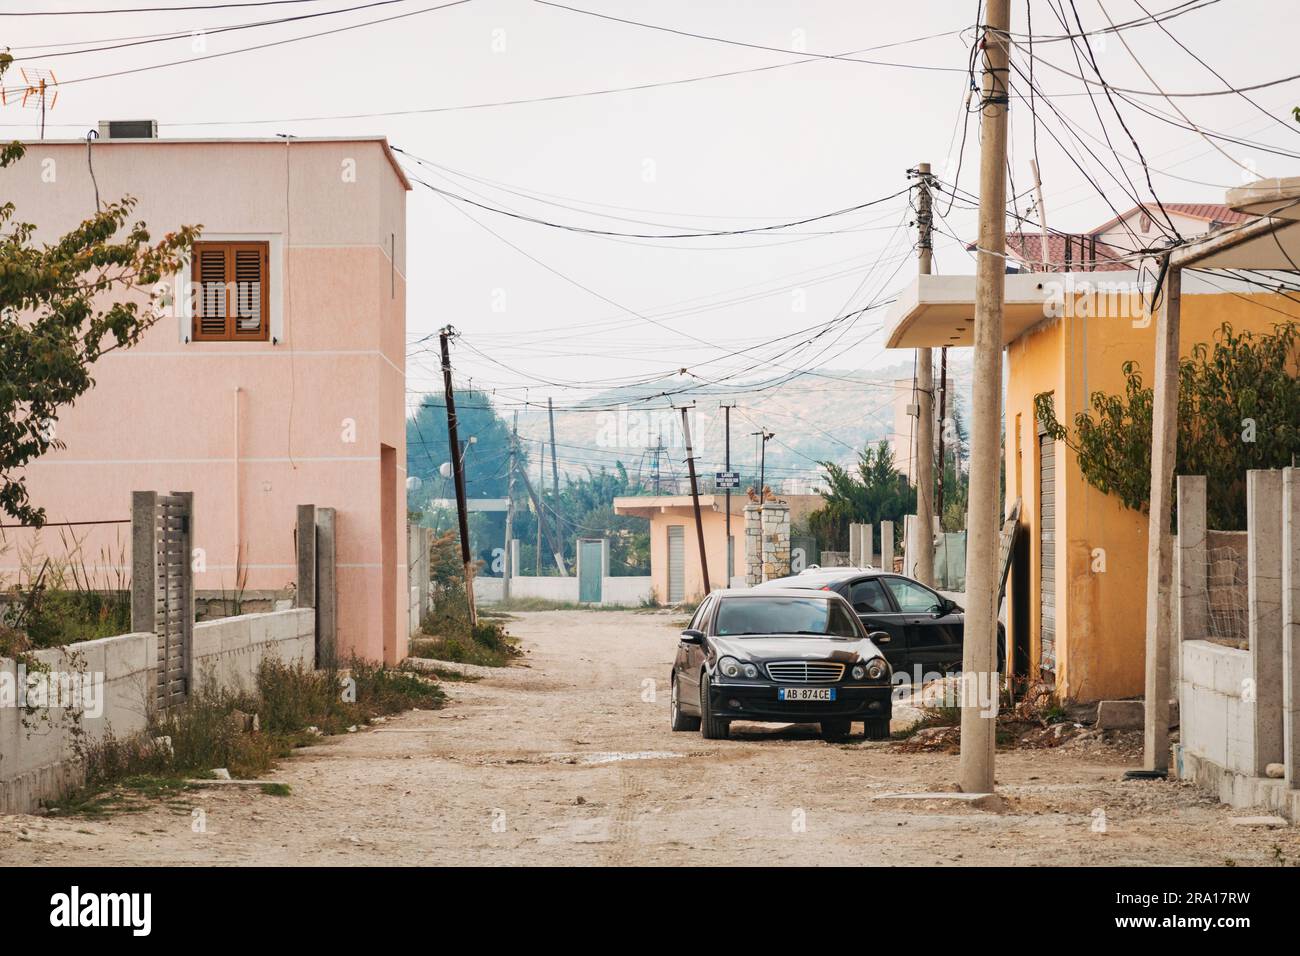 Una strada suburbana sterrata nella città costiera di Vlorë, nel sud dell'Albania Foto Stock